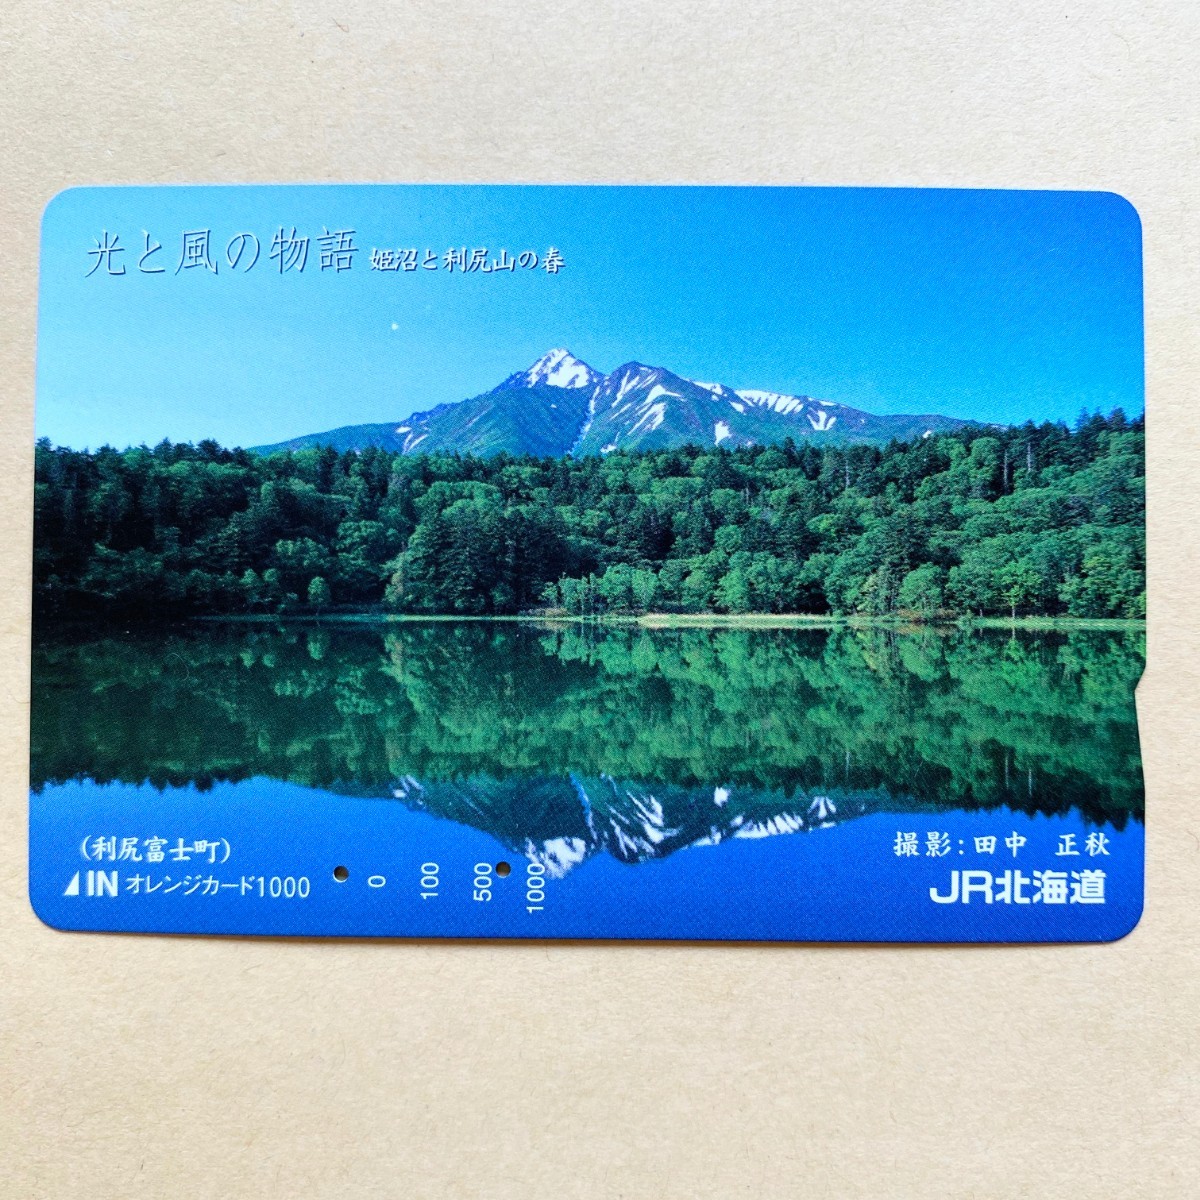 【使用済】 オレンジカード JR北海道 光と風の物語 姫沼と利尻山の春_画像1